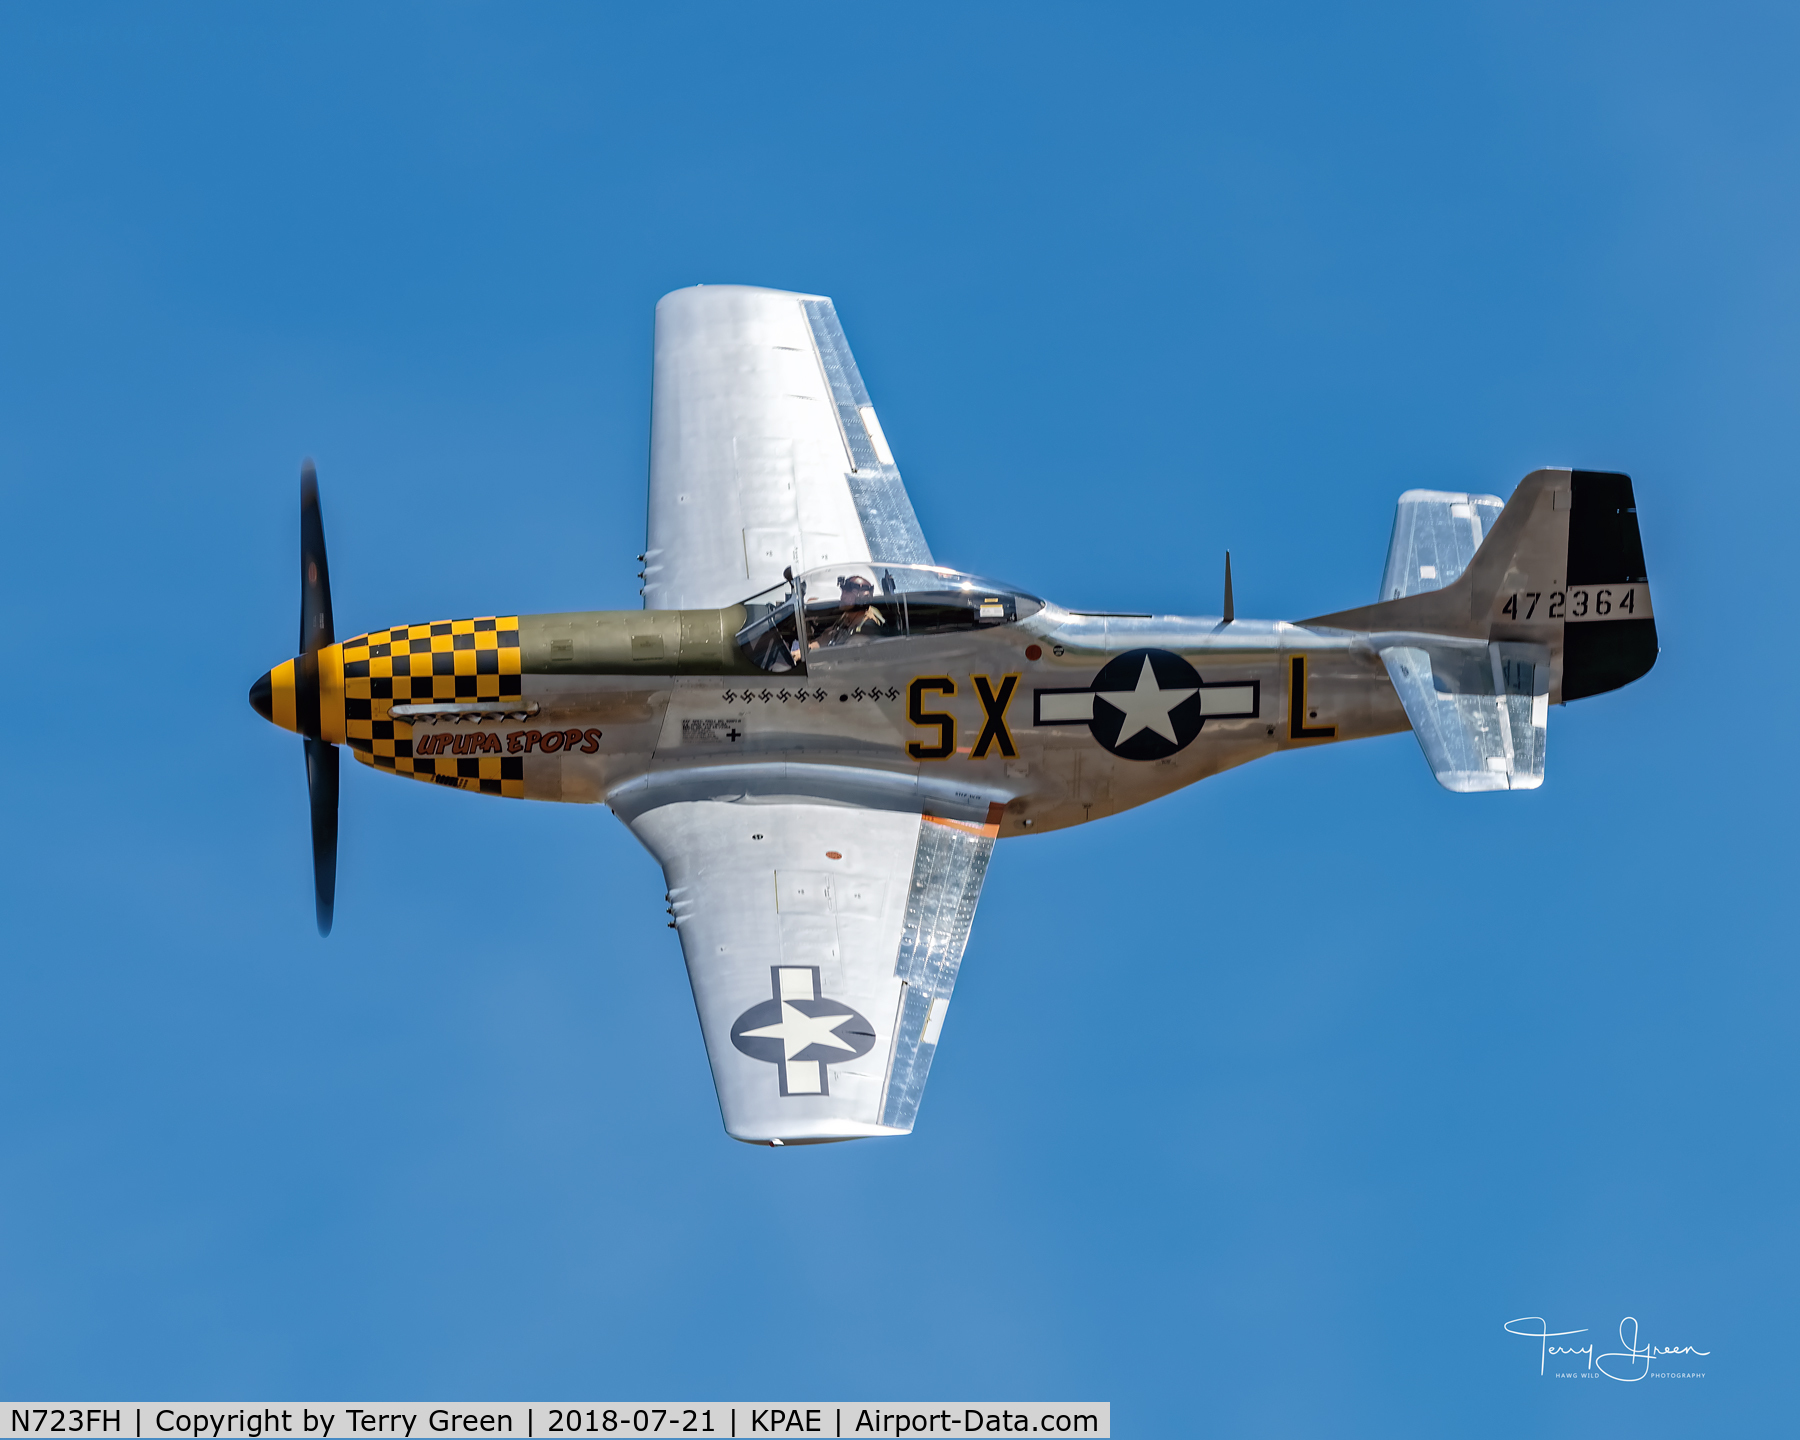 N723FH, 1944 North American P-51D Mustang C/N 44-72364, 2018 FHCAM SKYFAIR